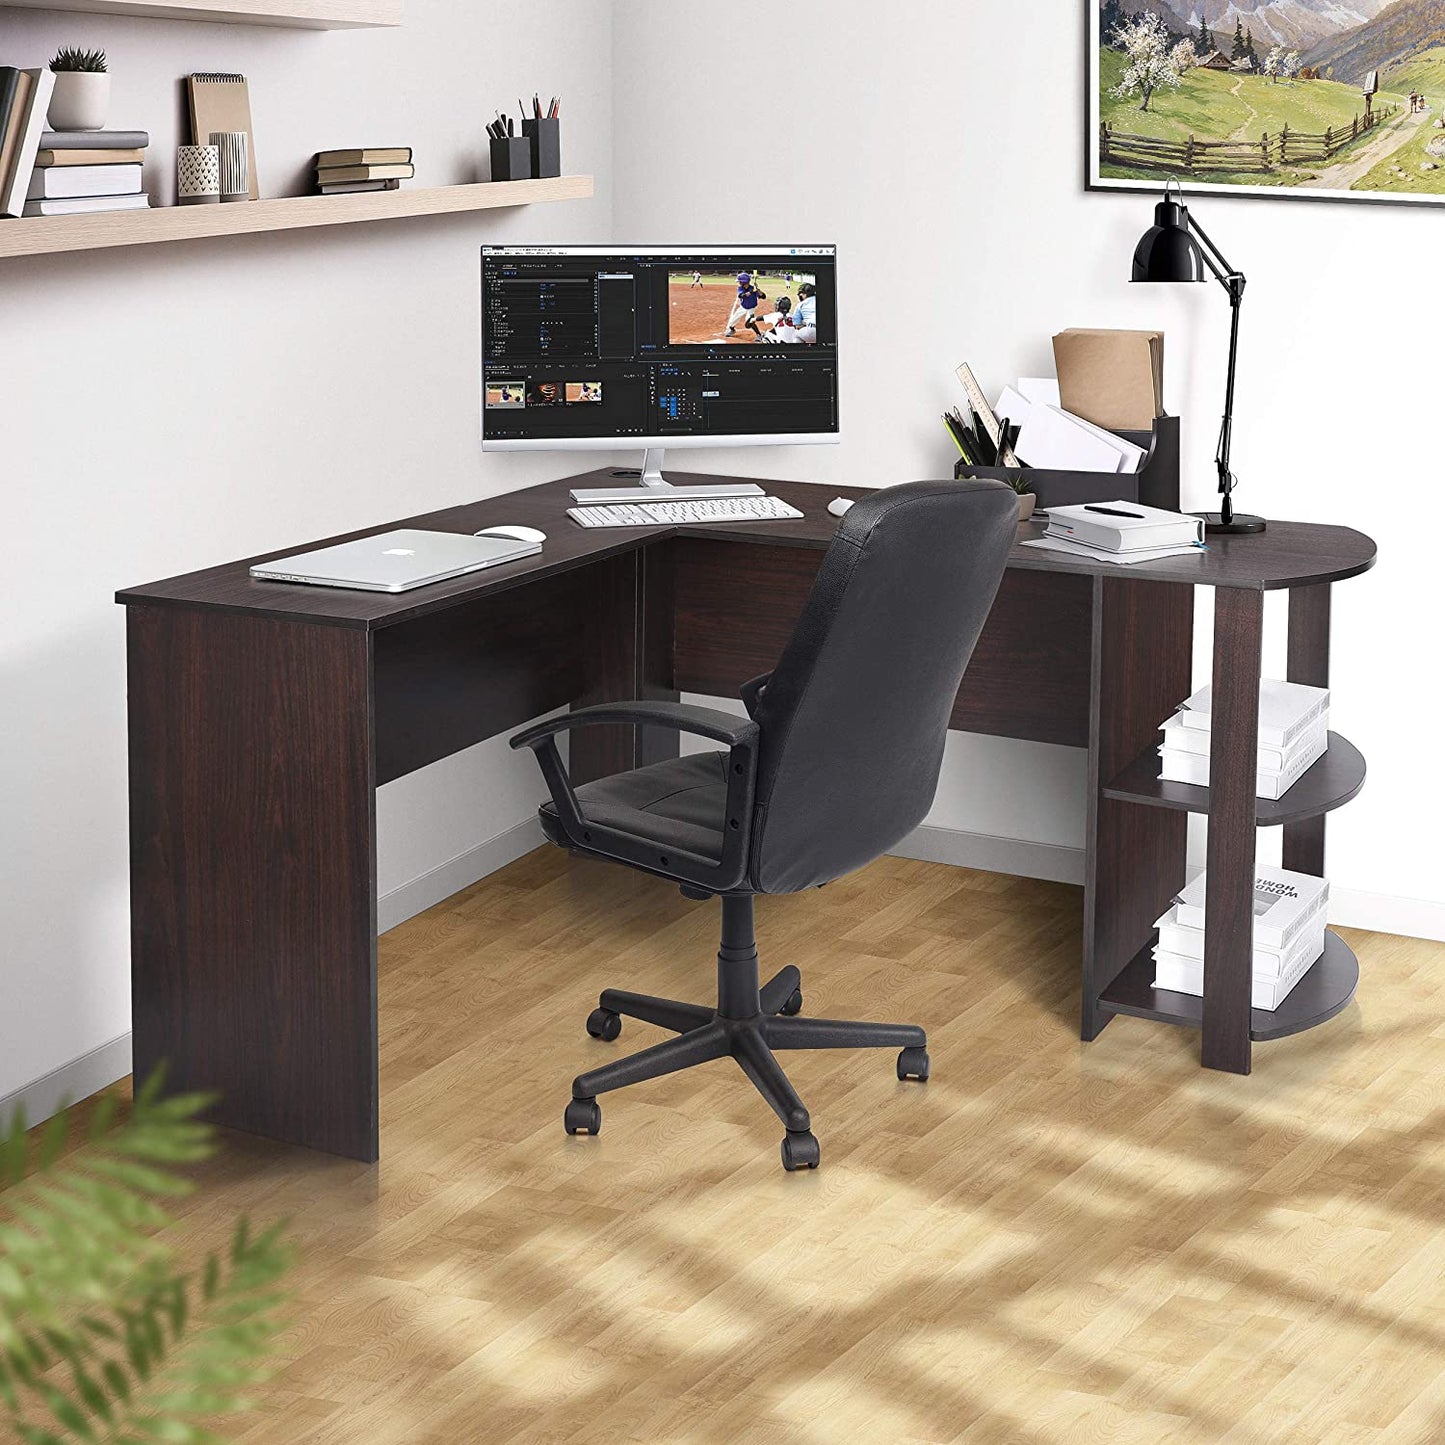 L-Shaped Computer Desk with Bookshelf 53.6’’ Corner Desk Gaming Desk Large Home Office Desk with Storage, Espresso